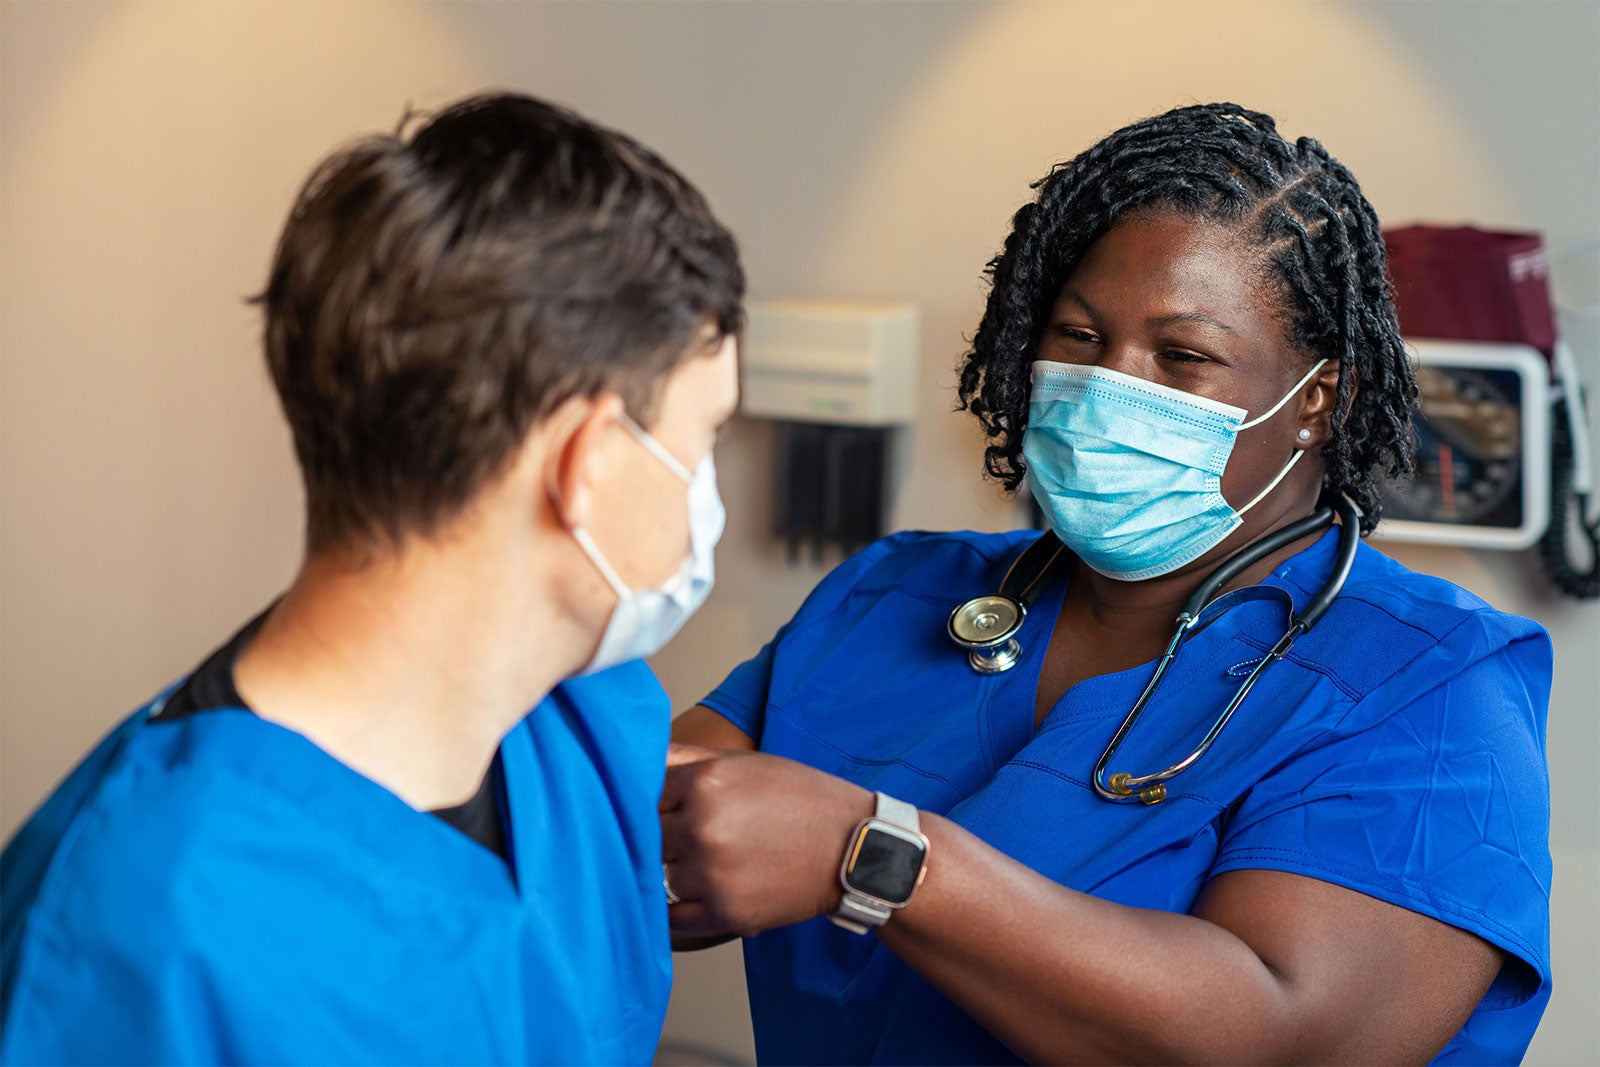 Una trabajadora de la salud negra pone una tirita en el brazo de un joven blanco. Ambos llevan mascarillas quirúrgicas azules.